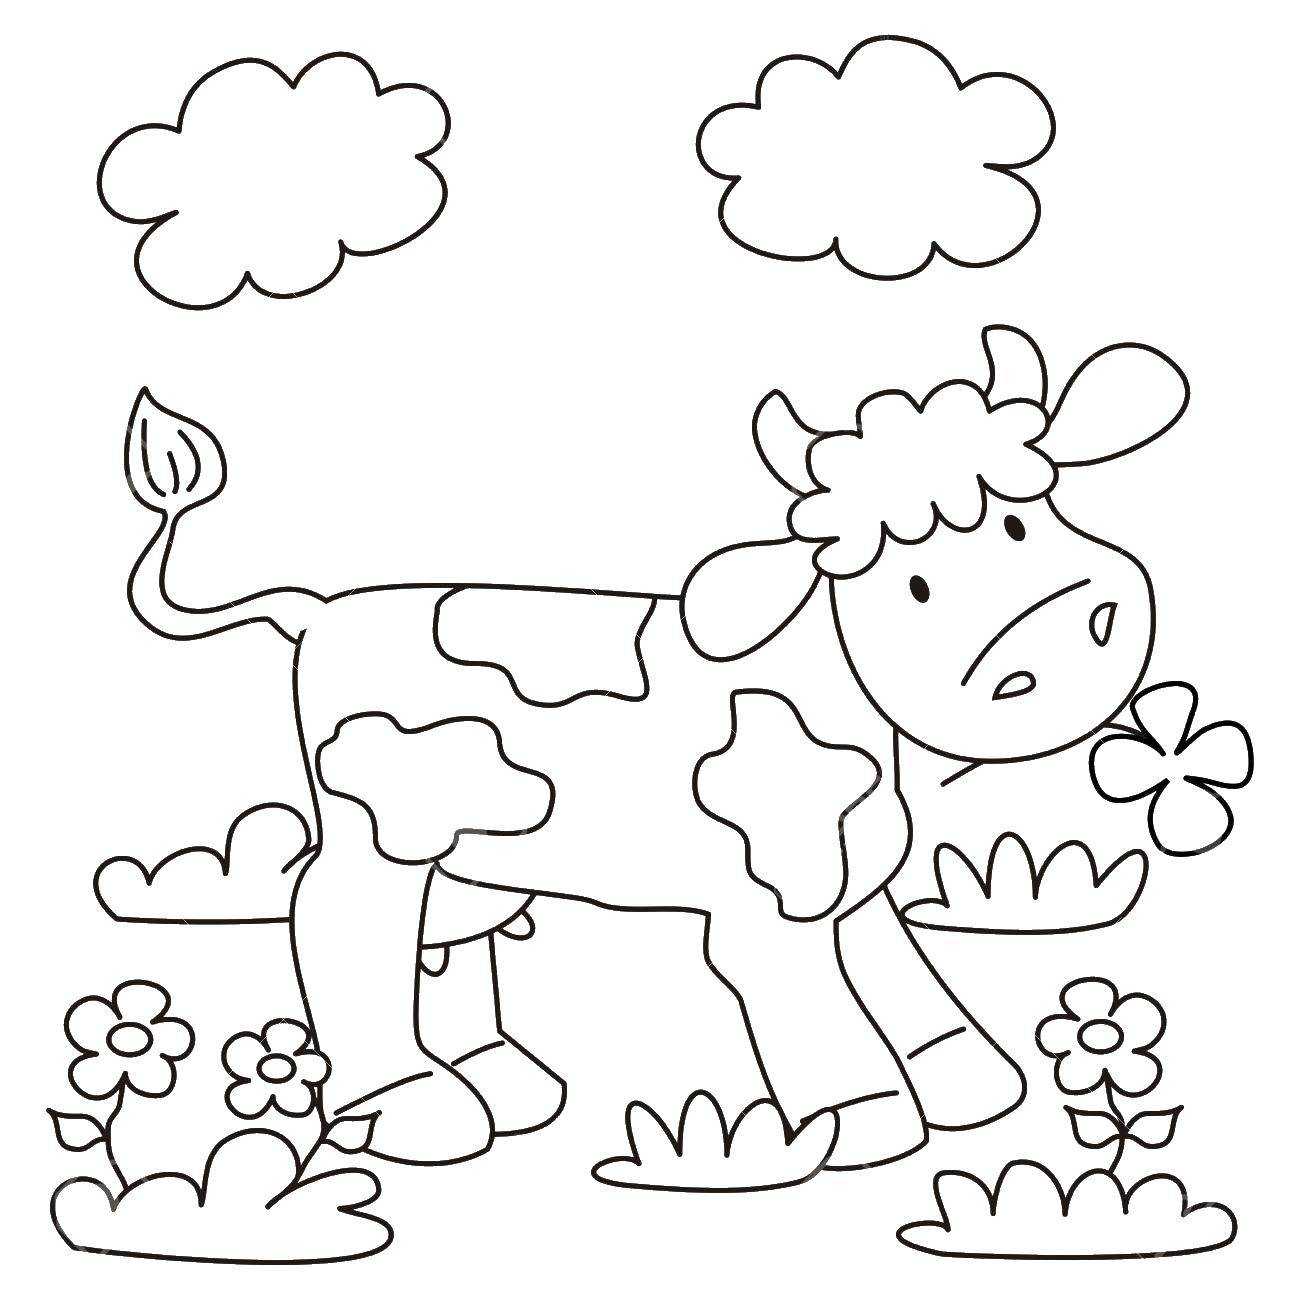 Как легко и красиво нарисовать корову поэтапно карандашом для начинающих. как научить ребенка рисовать коров